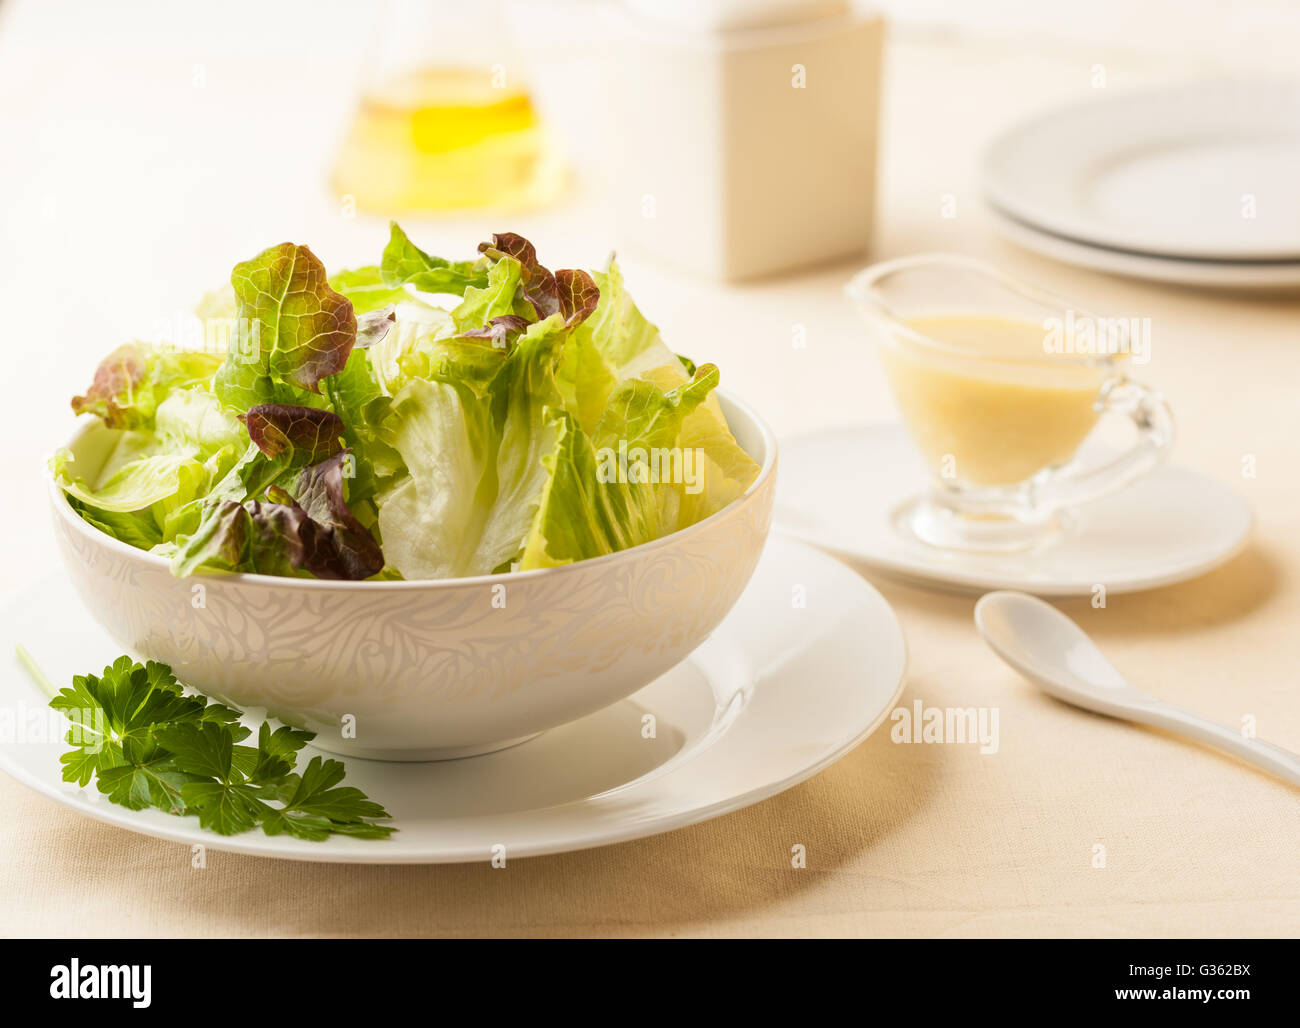 Un saladier sur une table avec de l'huile d'olive et d'une vinaigrette à la moutarde Banque D'Images